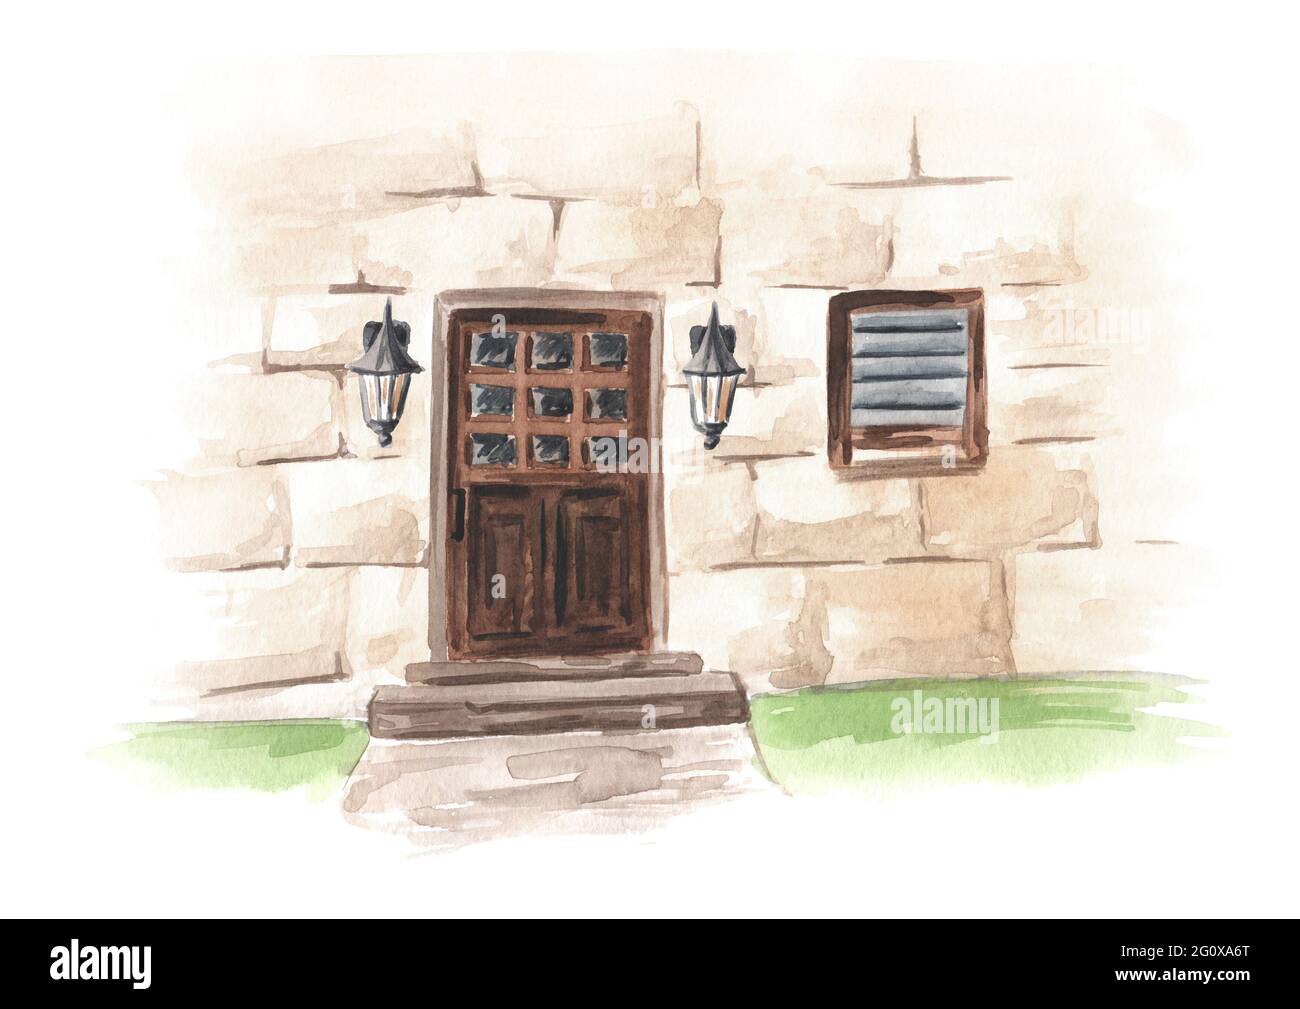 Porta d'ingresso in legno in una casa rurale in pietra. Illustrazione di acquerello disegnata a mano isolata su sfondo bianco Foto Stock